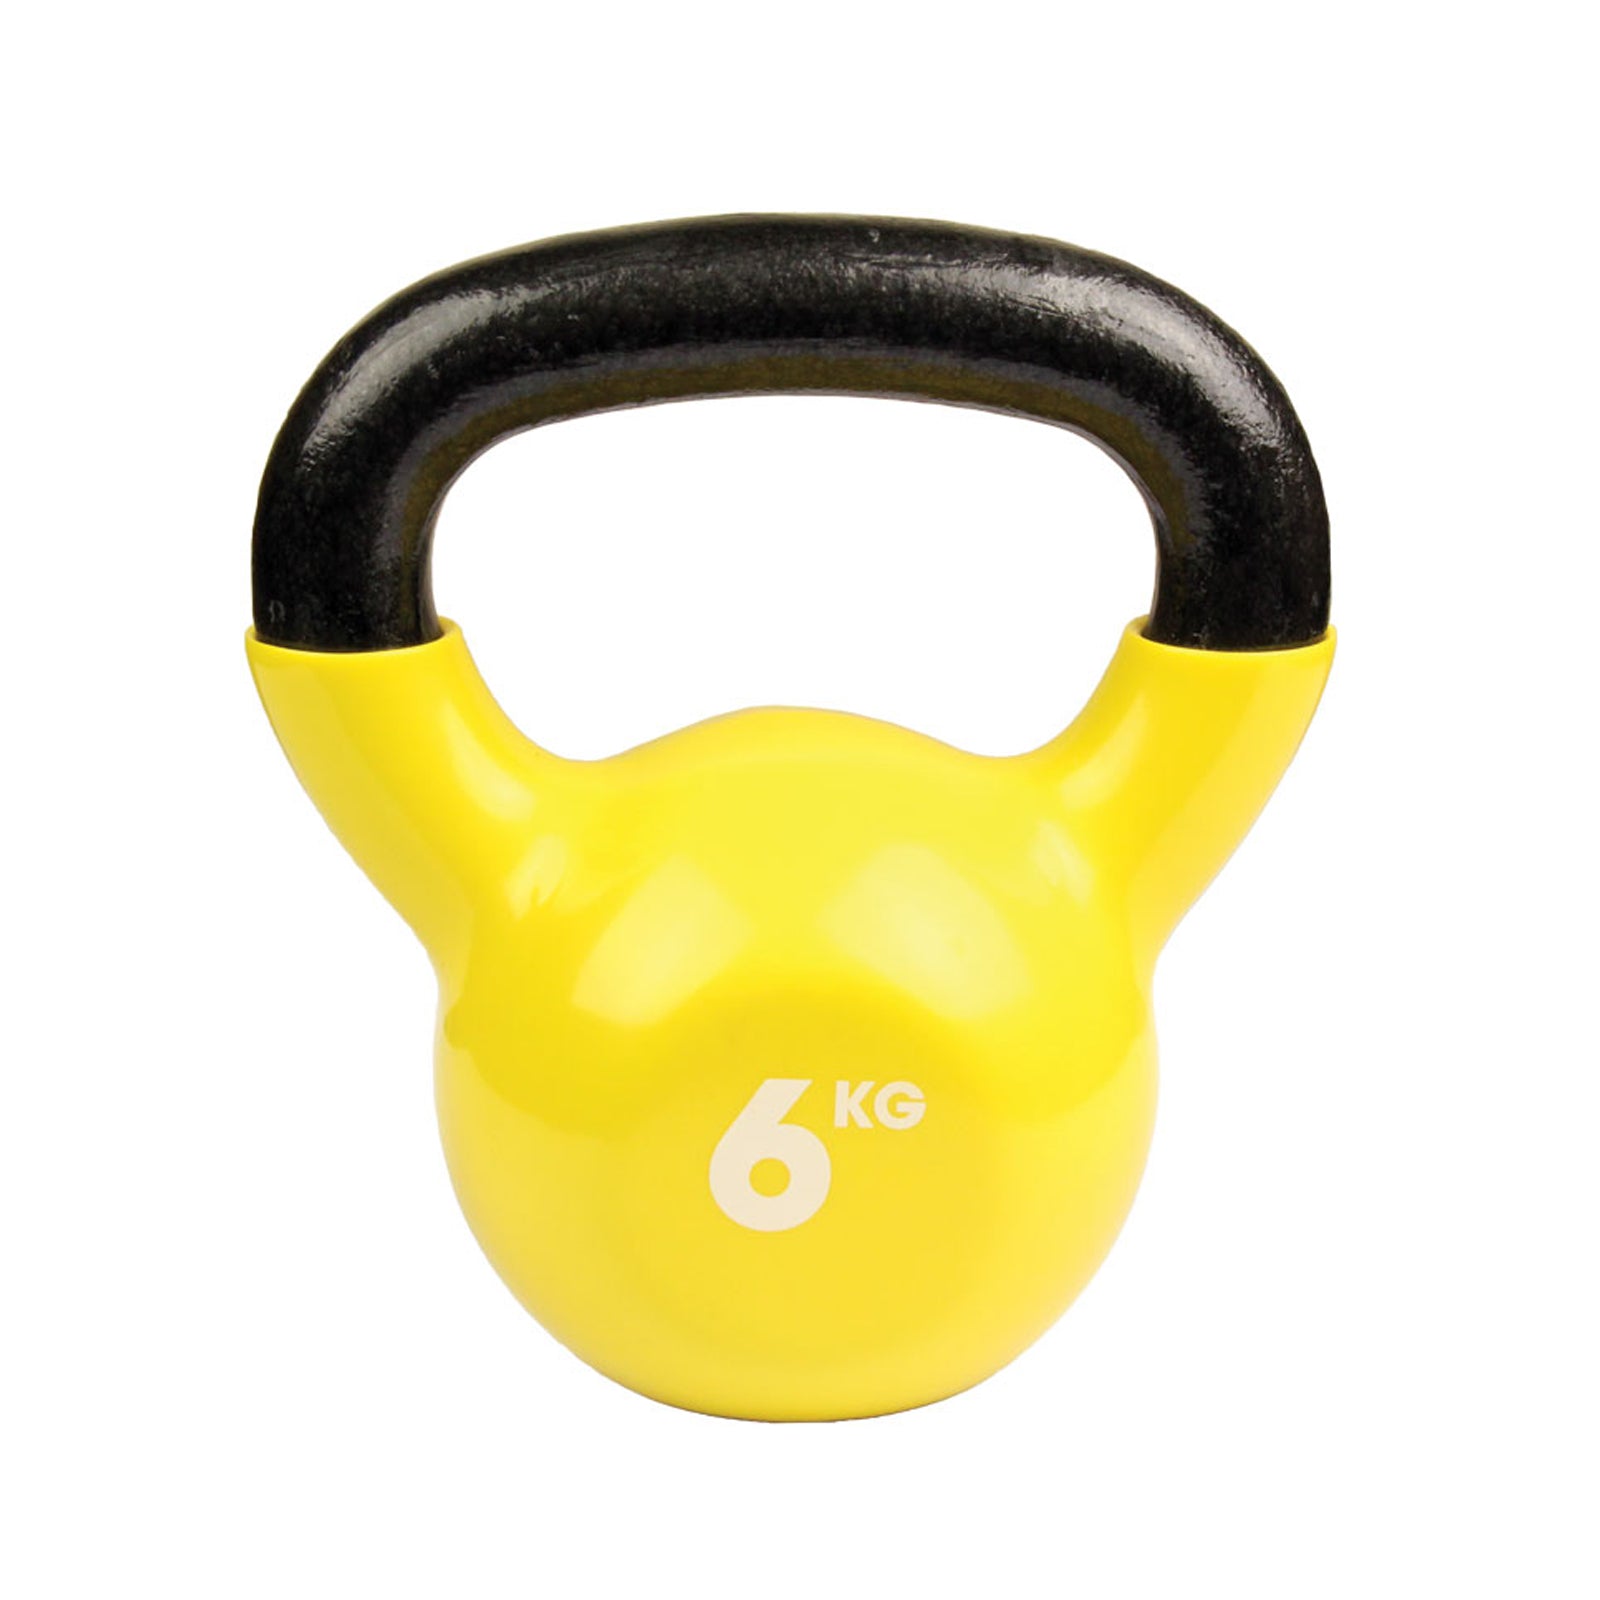 Fitness MAD 10kg Kettlebell - 6kg (Yellow) Alternate 1